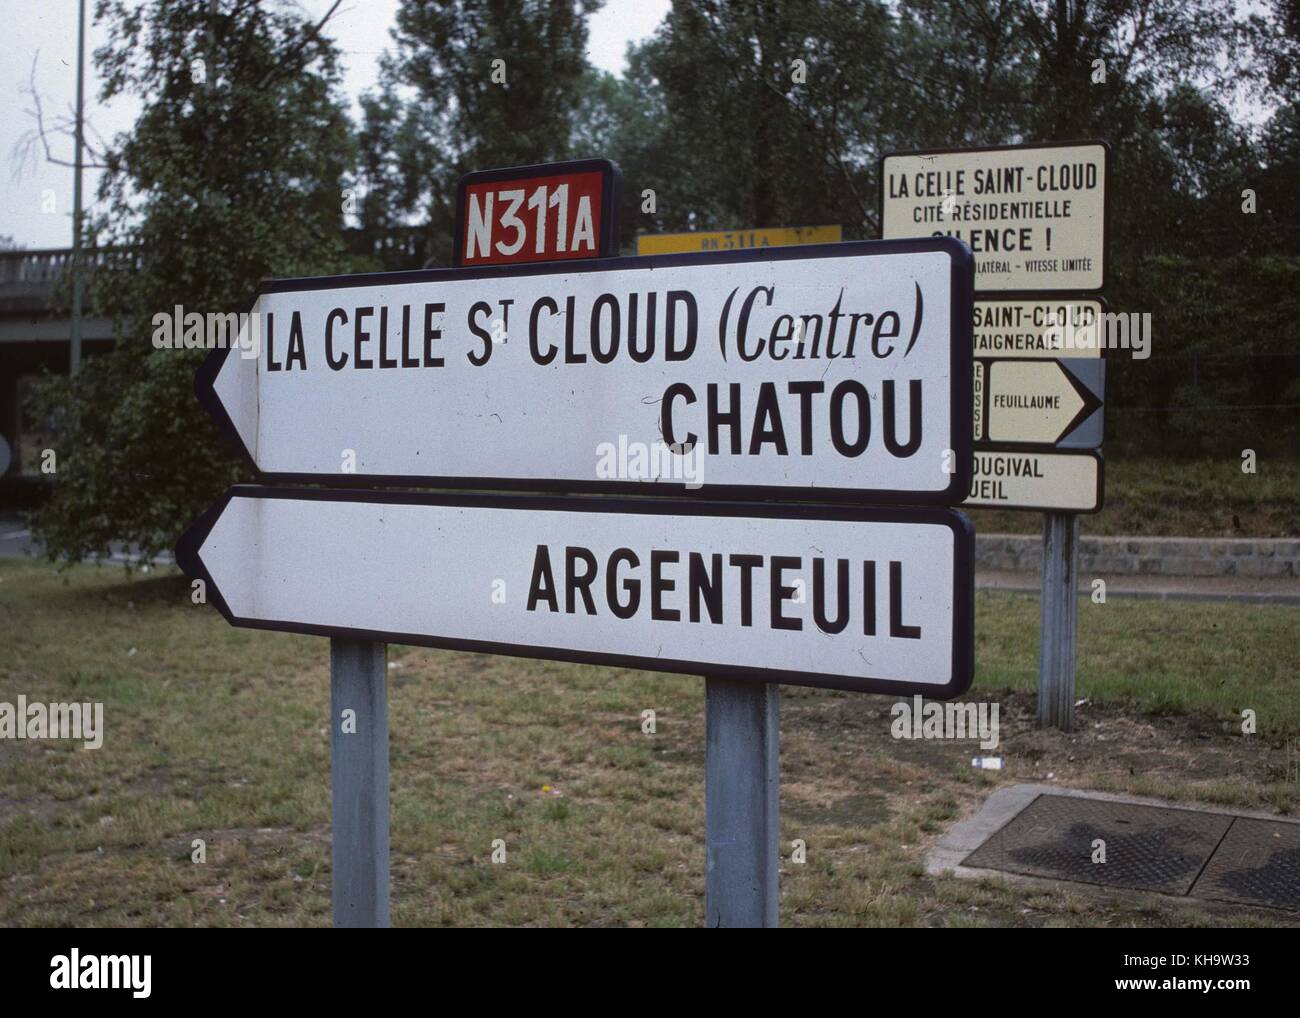 A road sign for Chatou, La Celle St. Cloud and Argenteuil near Paris Stock Photo